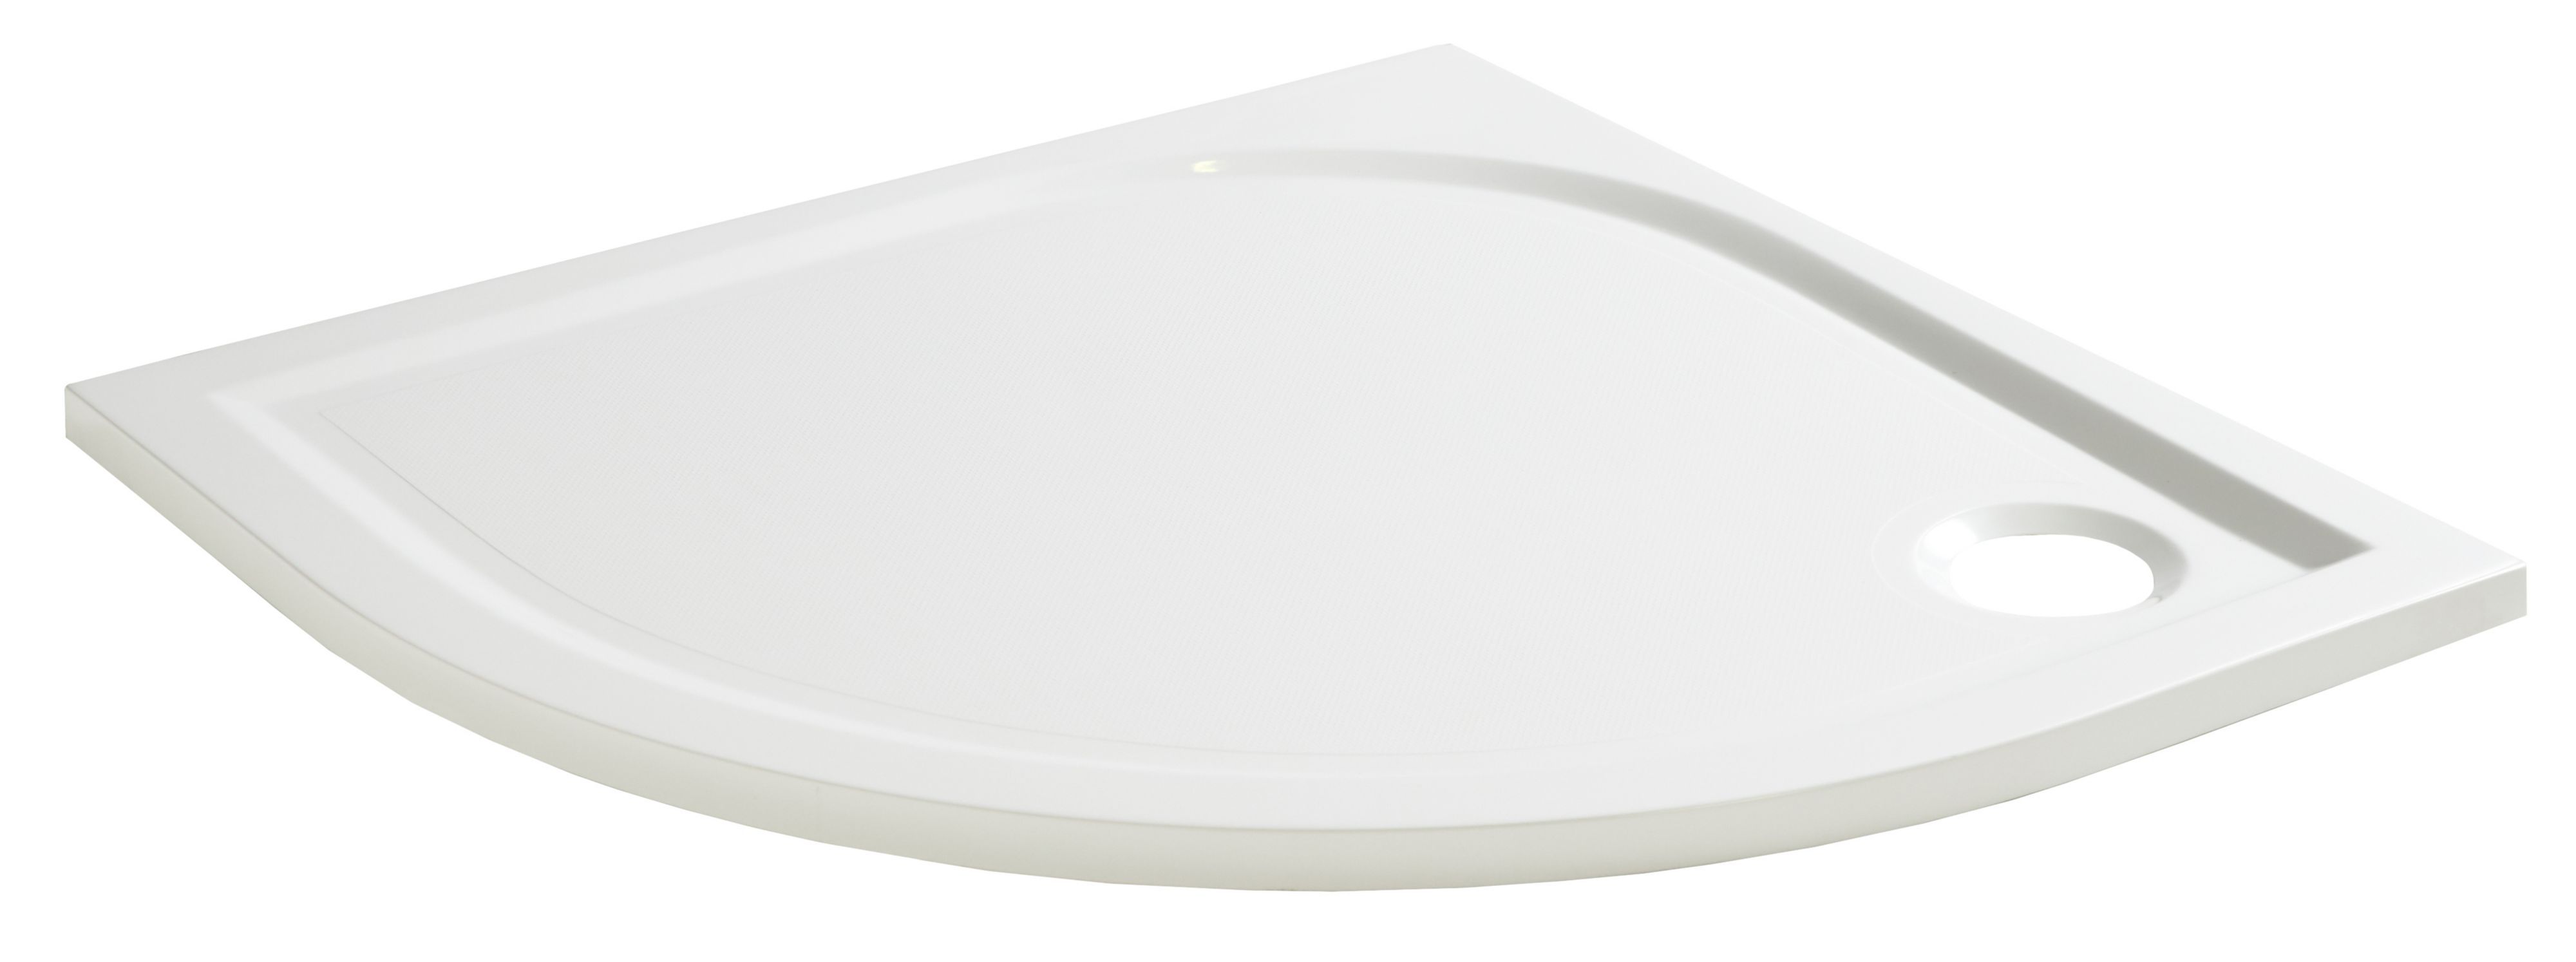 GoodHome Limski White Quadrant Shower tray (L)800mm (W)800mm (H) 28mm